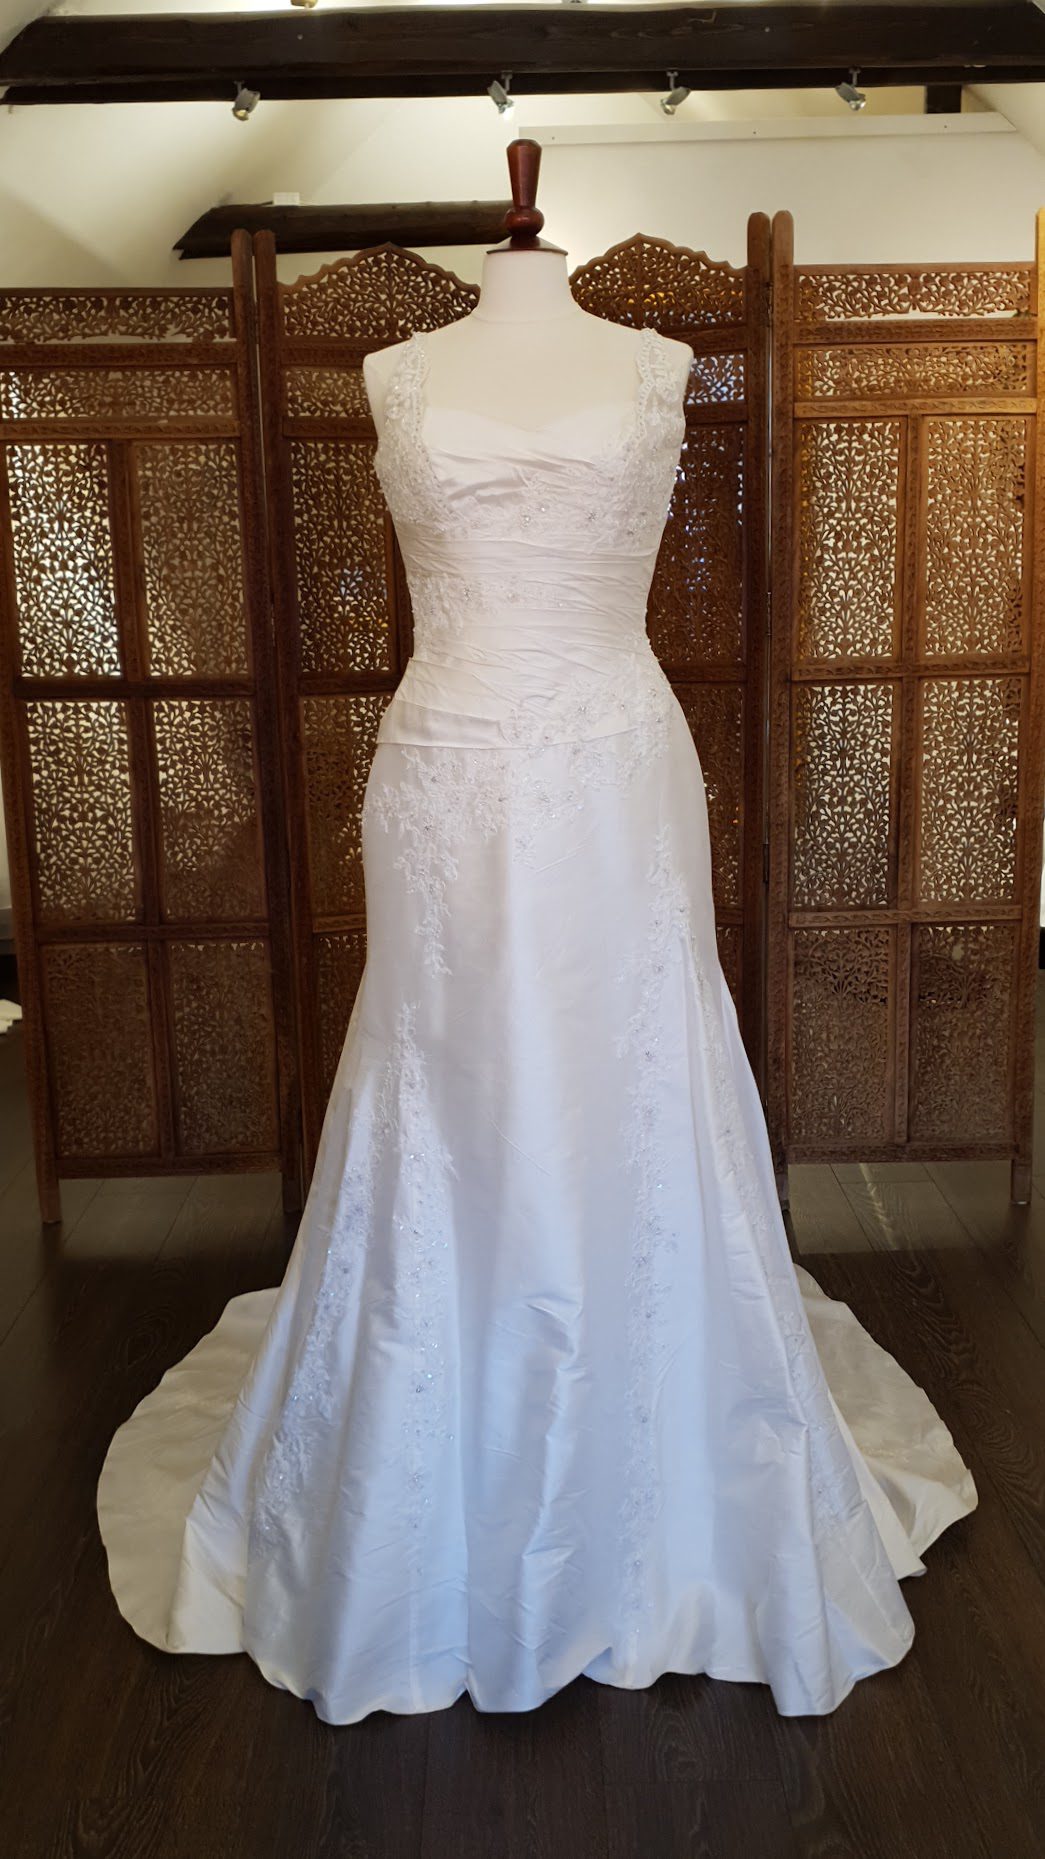 La Sposa. Super smuk og elegant brudekjole med en slank silhuet. Kjolen er i silke, har blondeapplikationer, draperinger, hjerteudskæring og stropper.